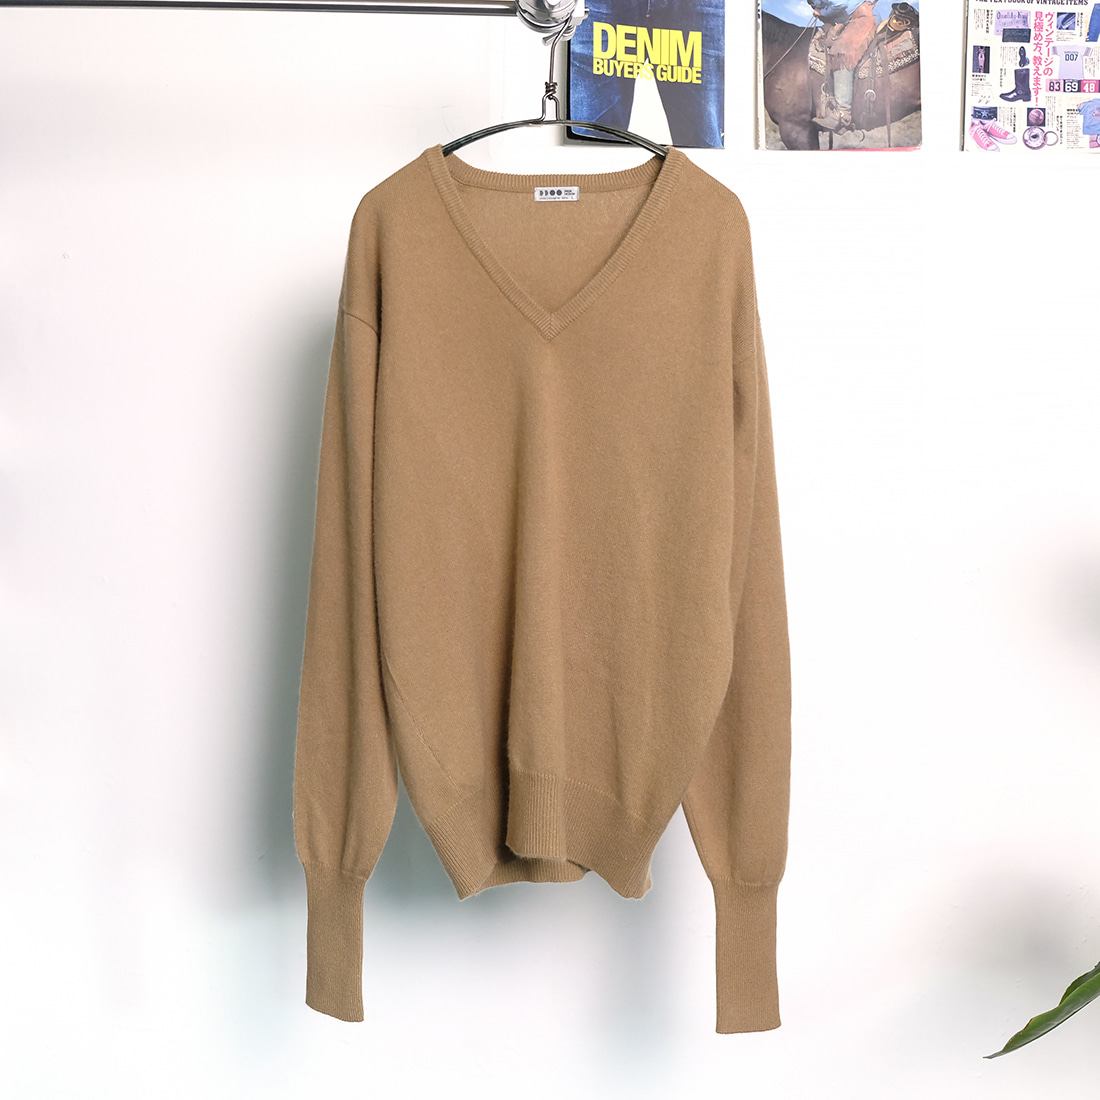  Prgr design pure cashmere v neck sweater